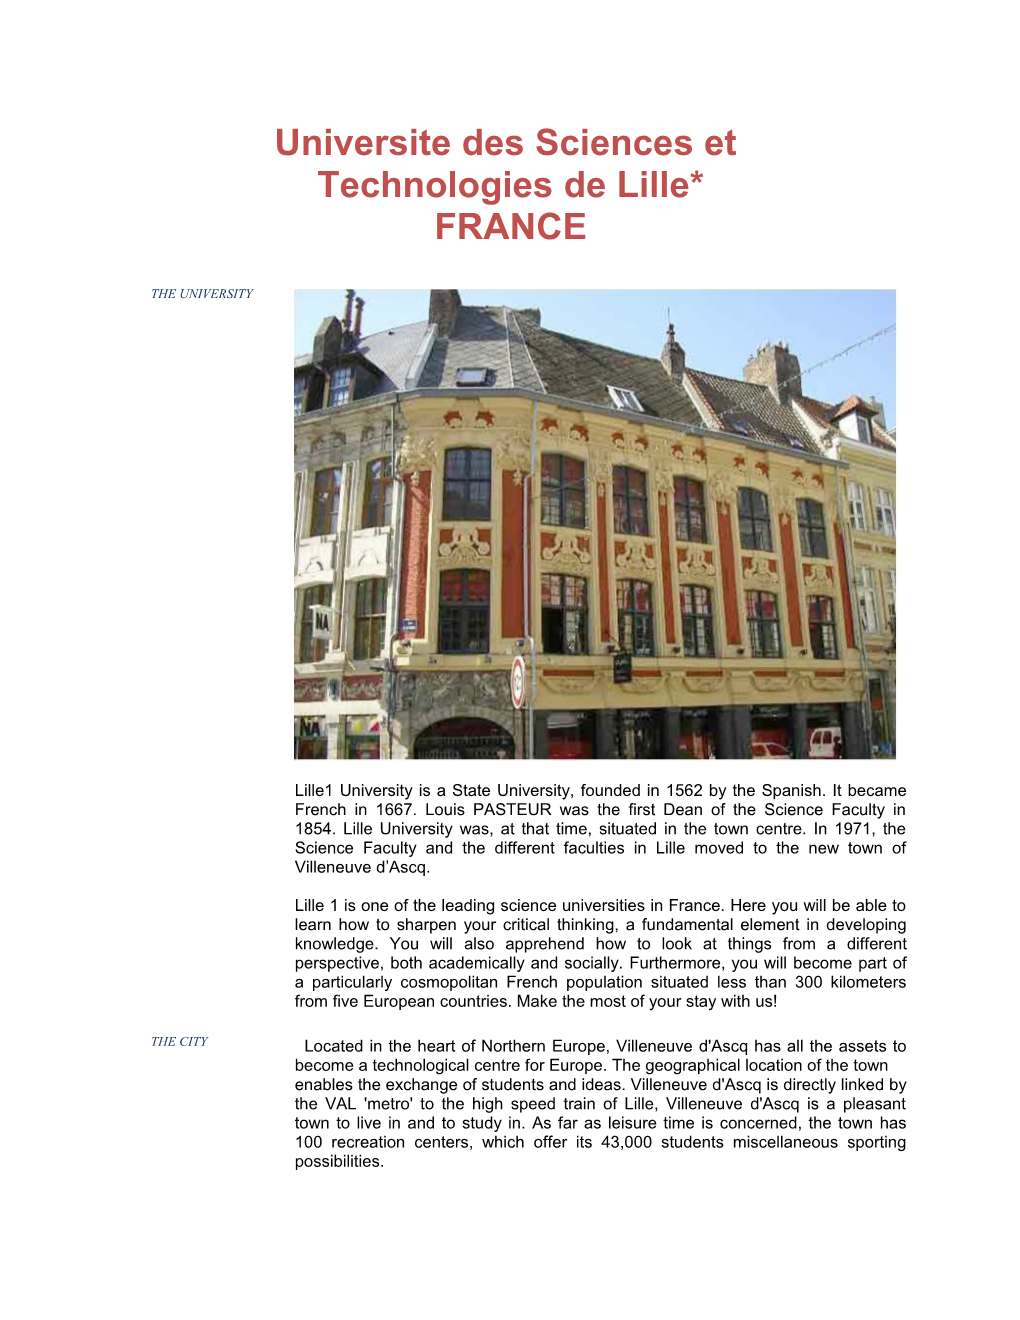 Technologies De Lille*